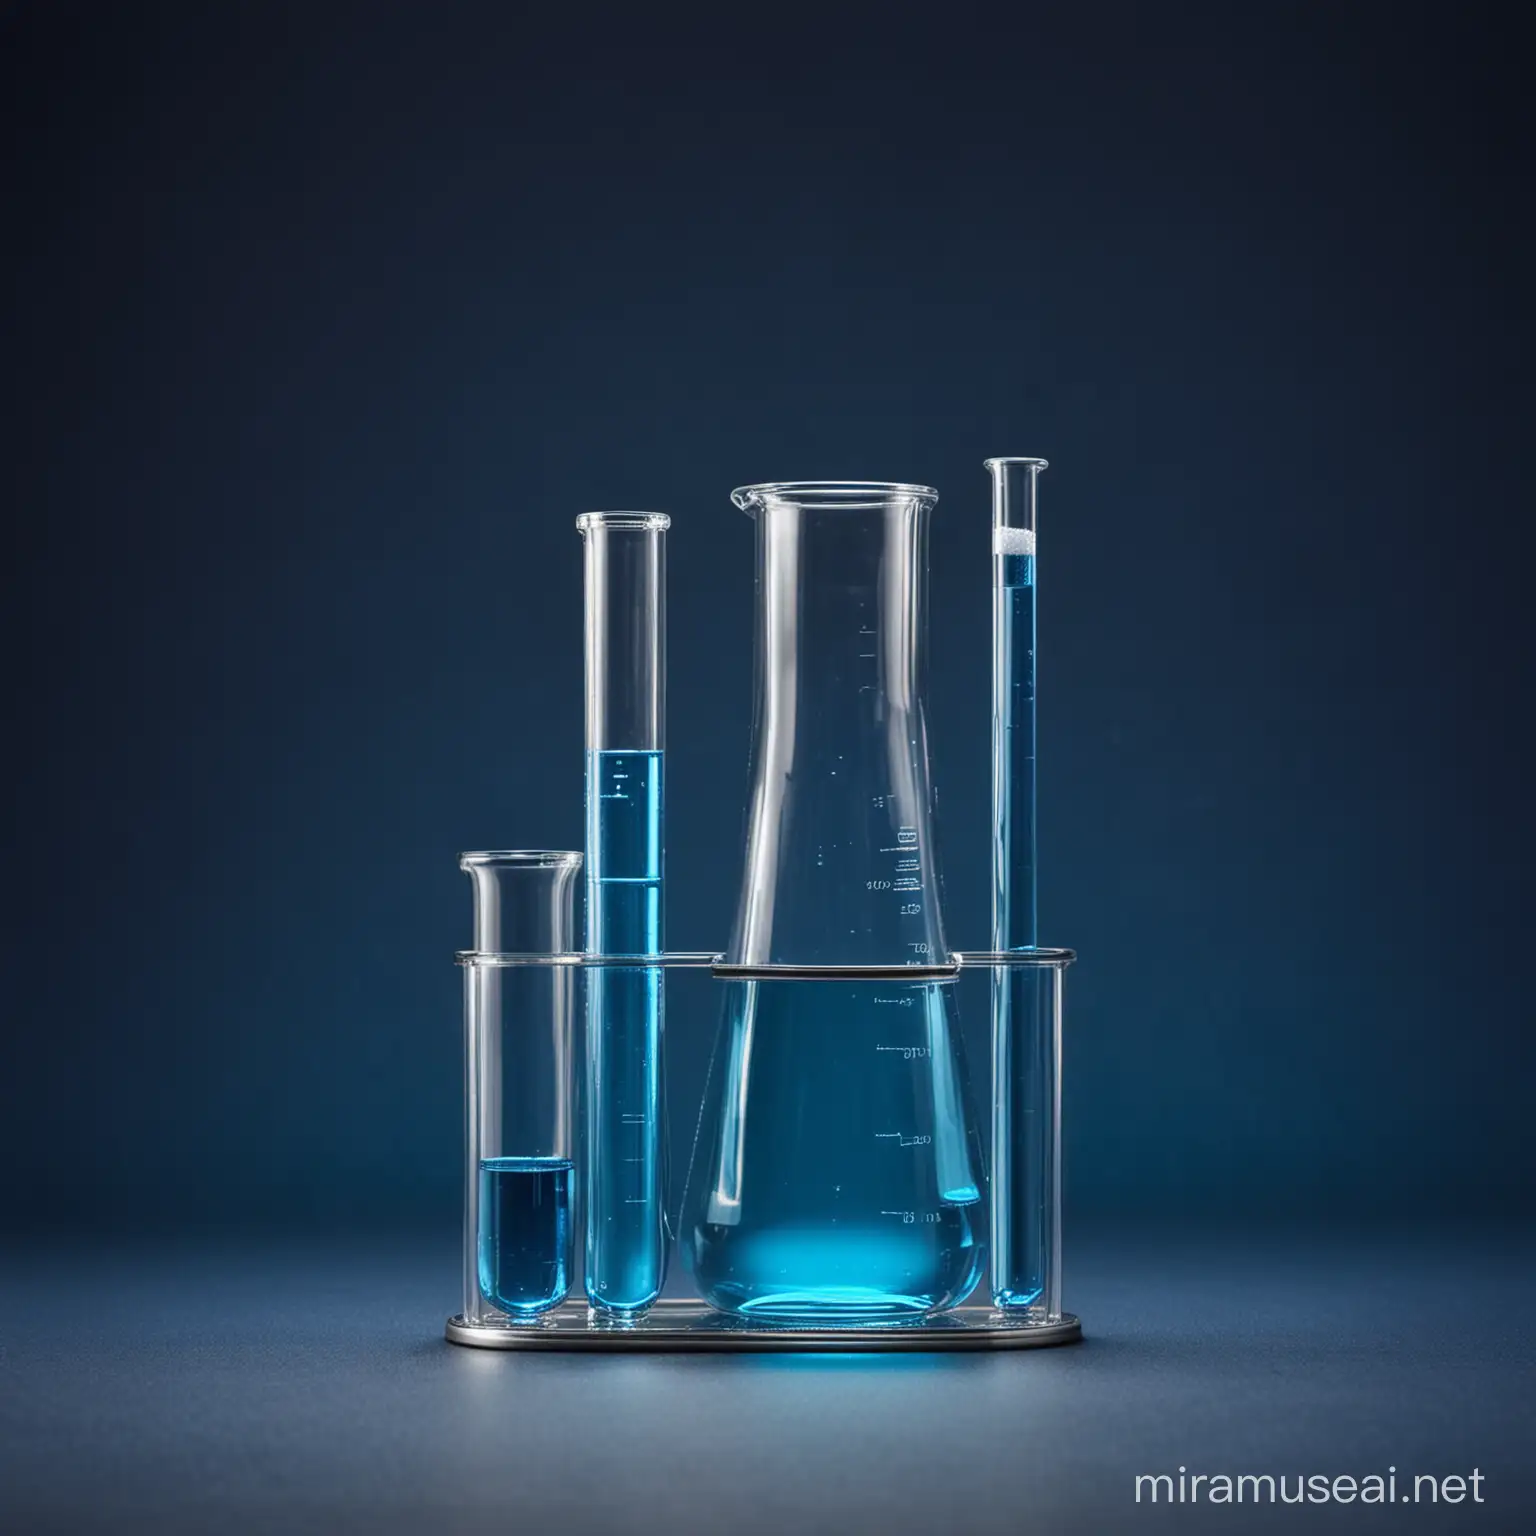 Shining Scientific Glassware on Dark Blue Background